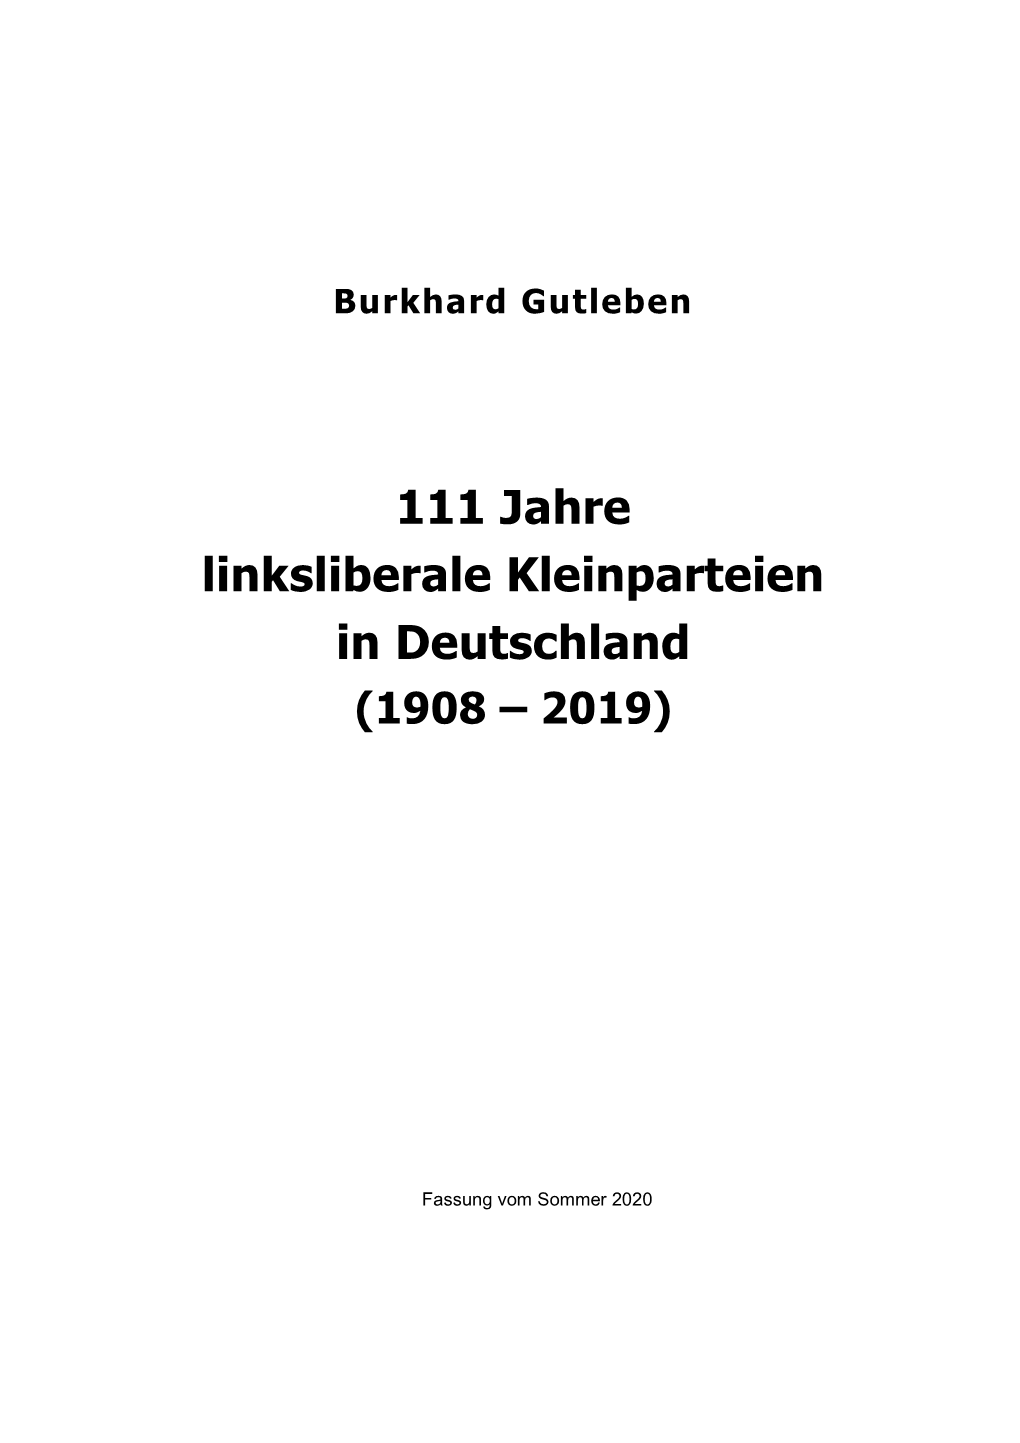 111 Jahre Linksliberale Kleinparteien in Deutschland (1908 – 2019)